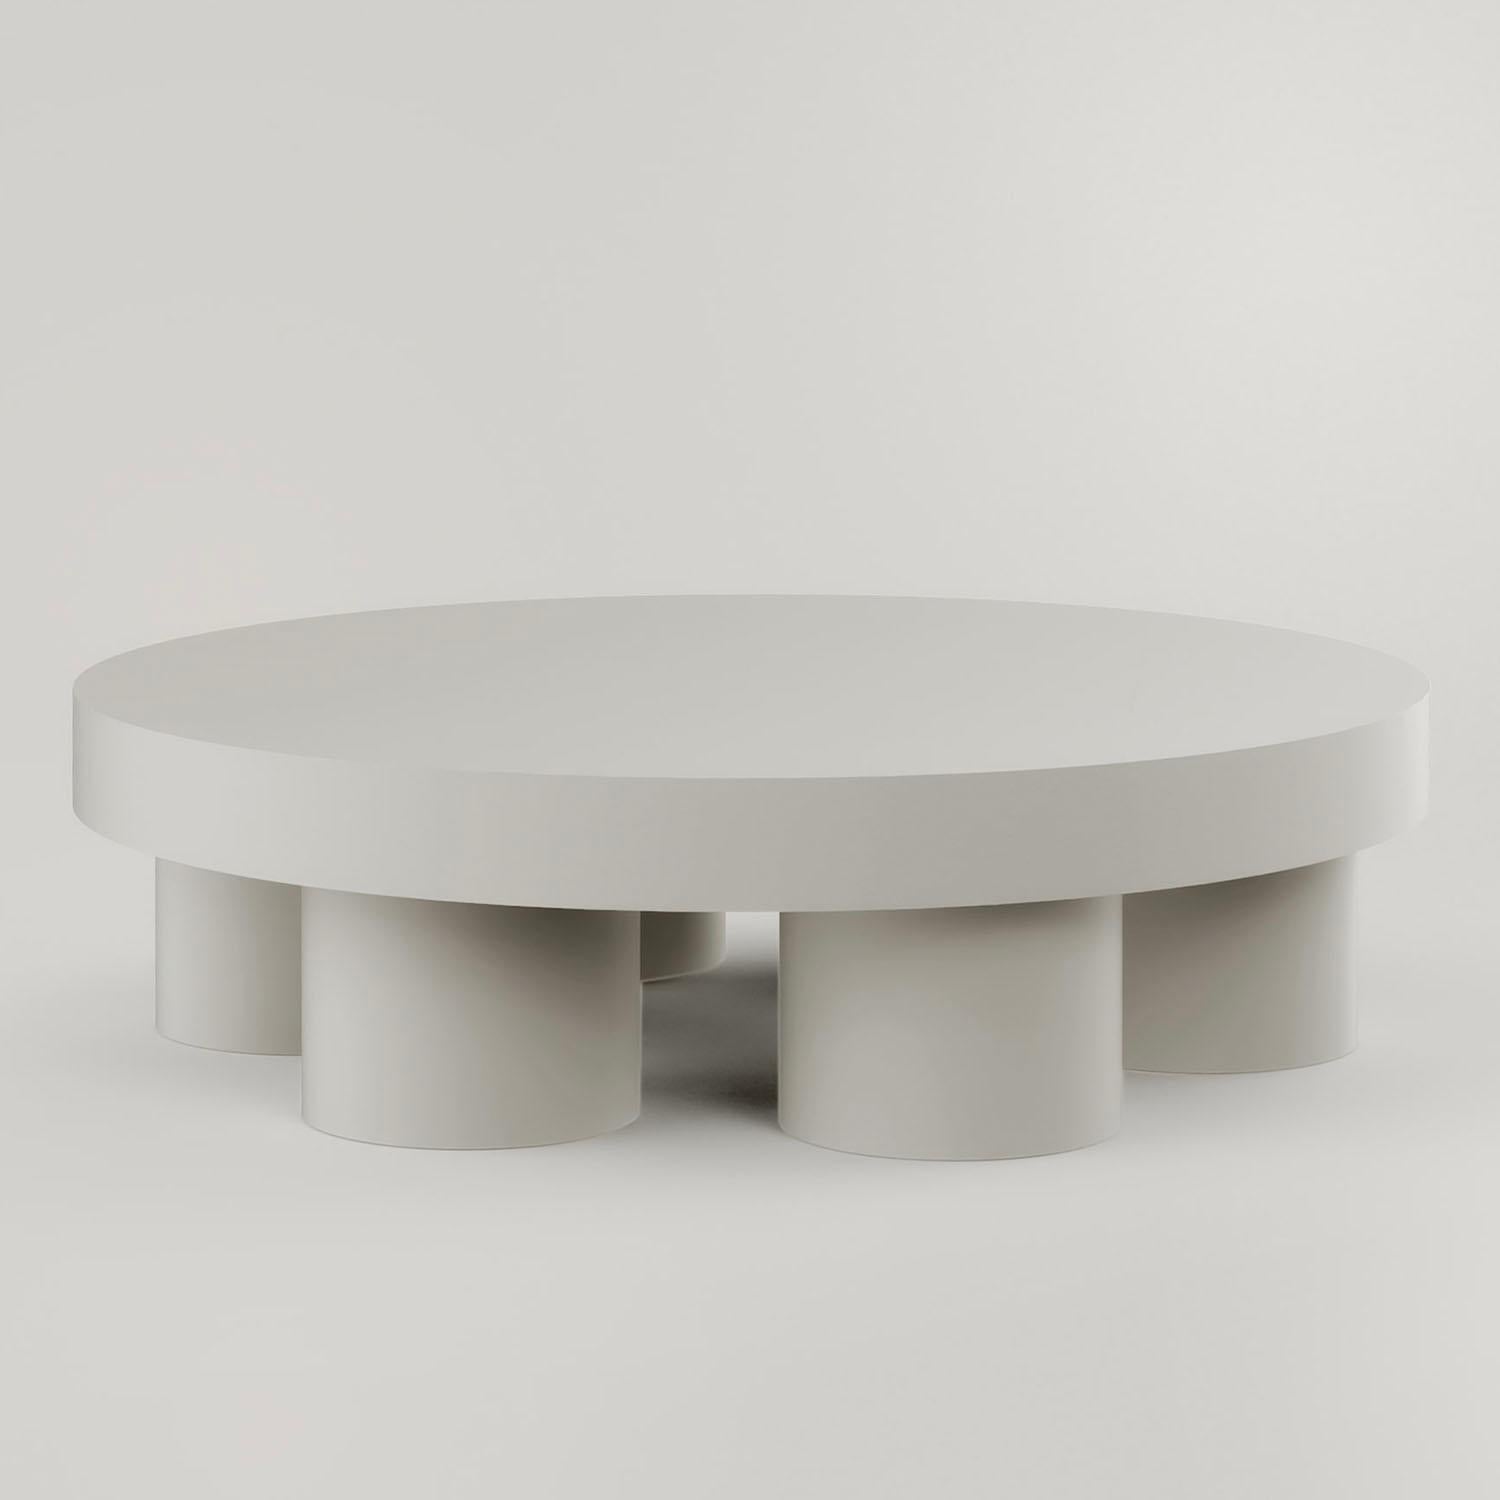 Table basse contemporaine en Jesmonite - Pilotis Low Table de Malgorzata Bany.

La table basse Pilotis est une pièce multifonctionnelle fabriquée en Jesmonite. Dernière née de la gamme 